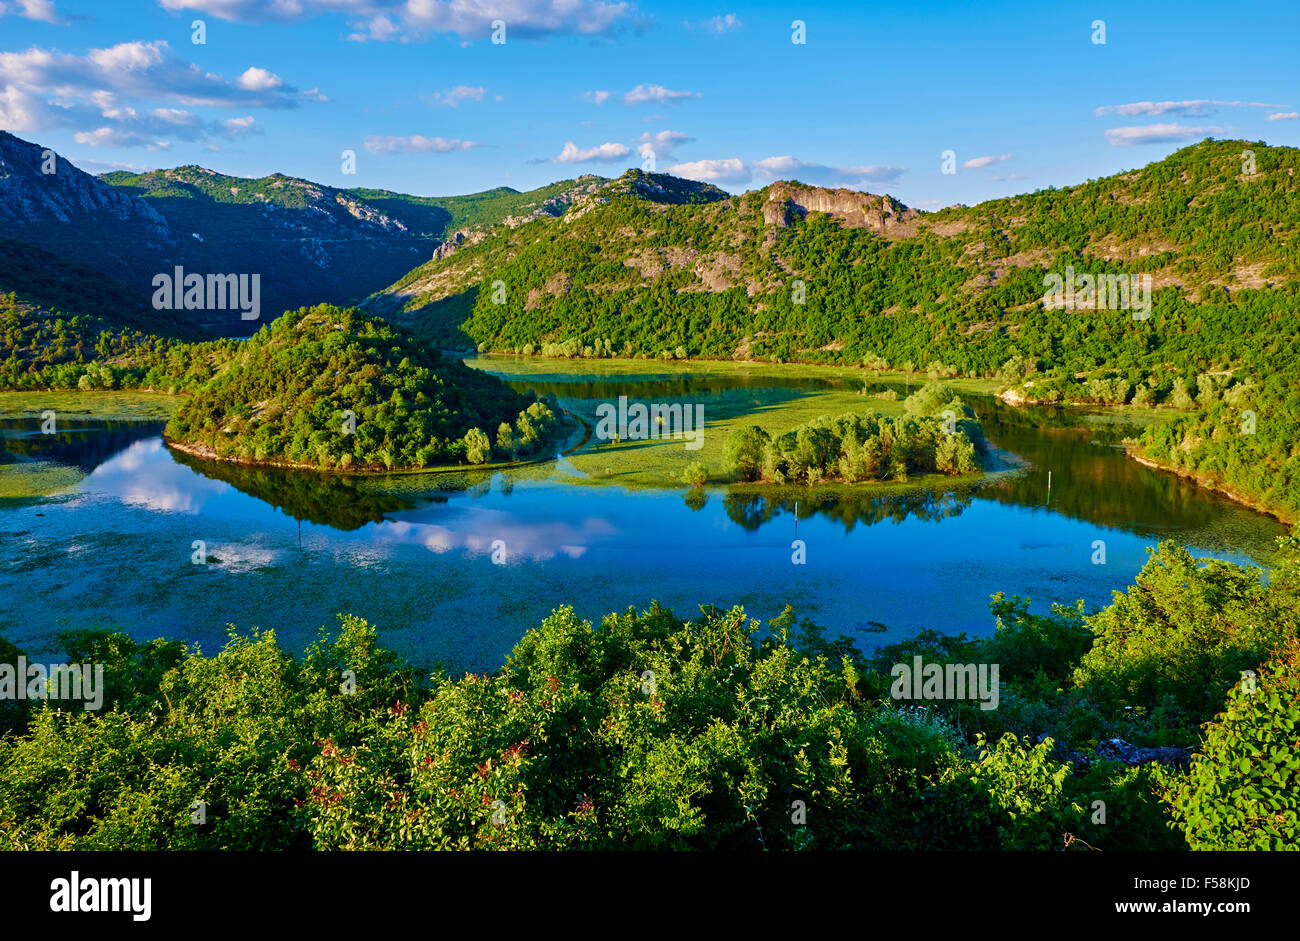 Le Monténégro, le parc national du lac de Skadar, vue sur la rivière de la vallée de la rivière Rijeka Crnojevica Banque D'Images